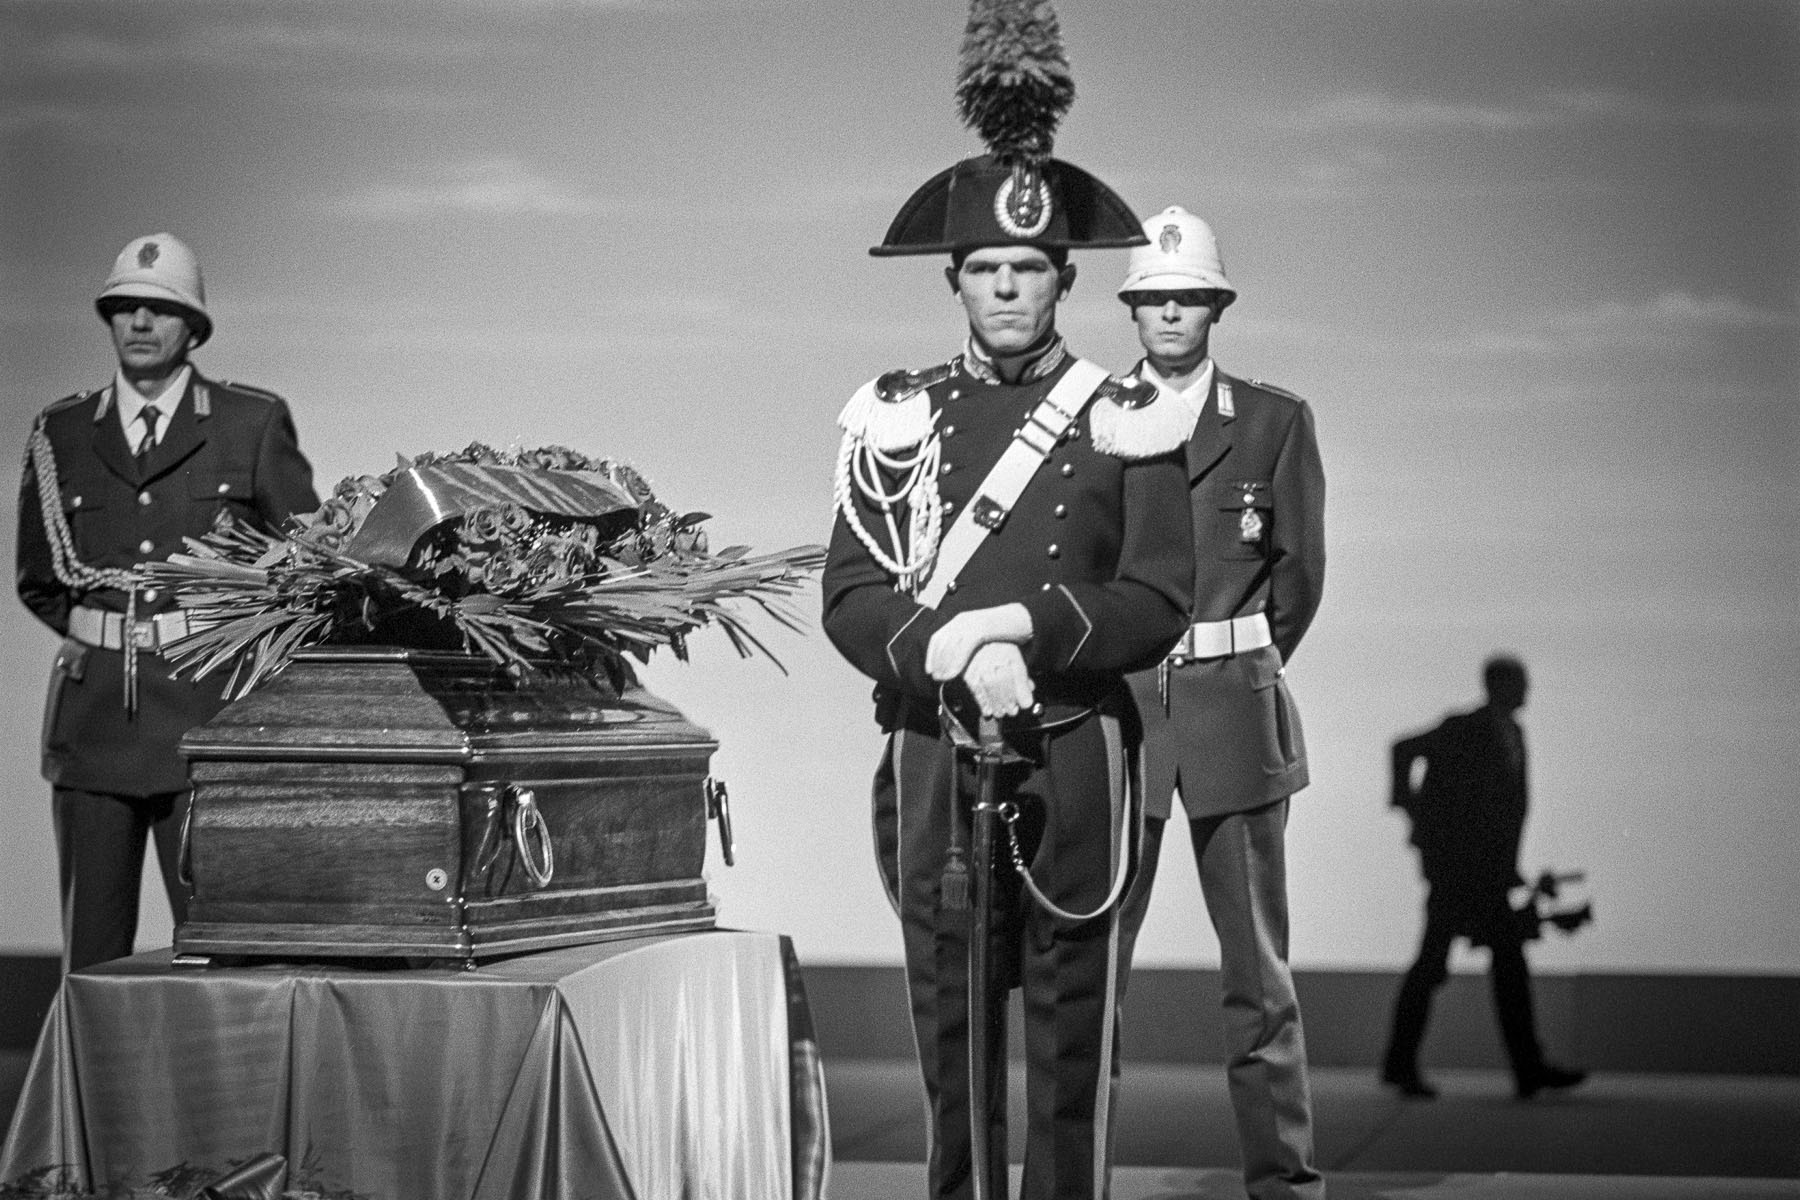 Federico Fellini's funeral, november 1993